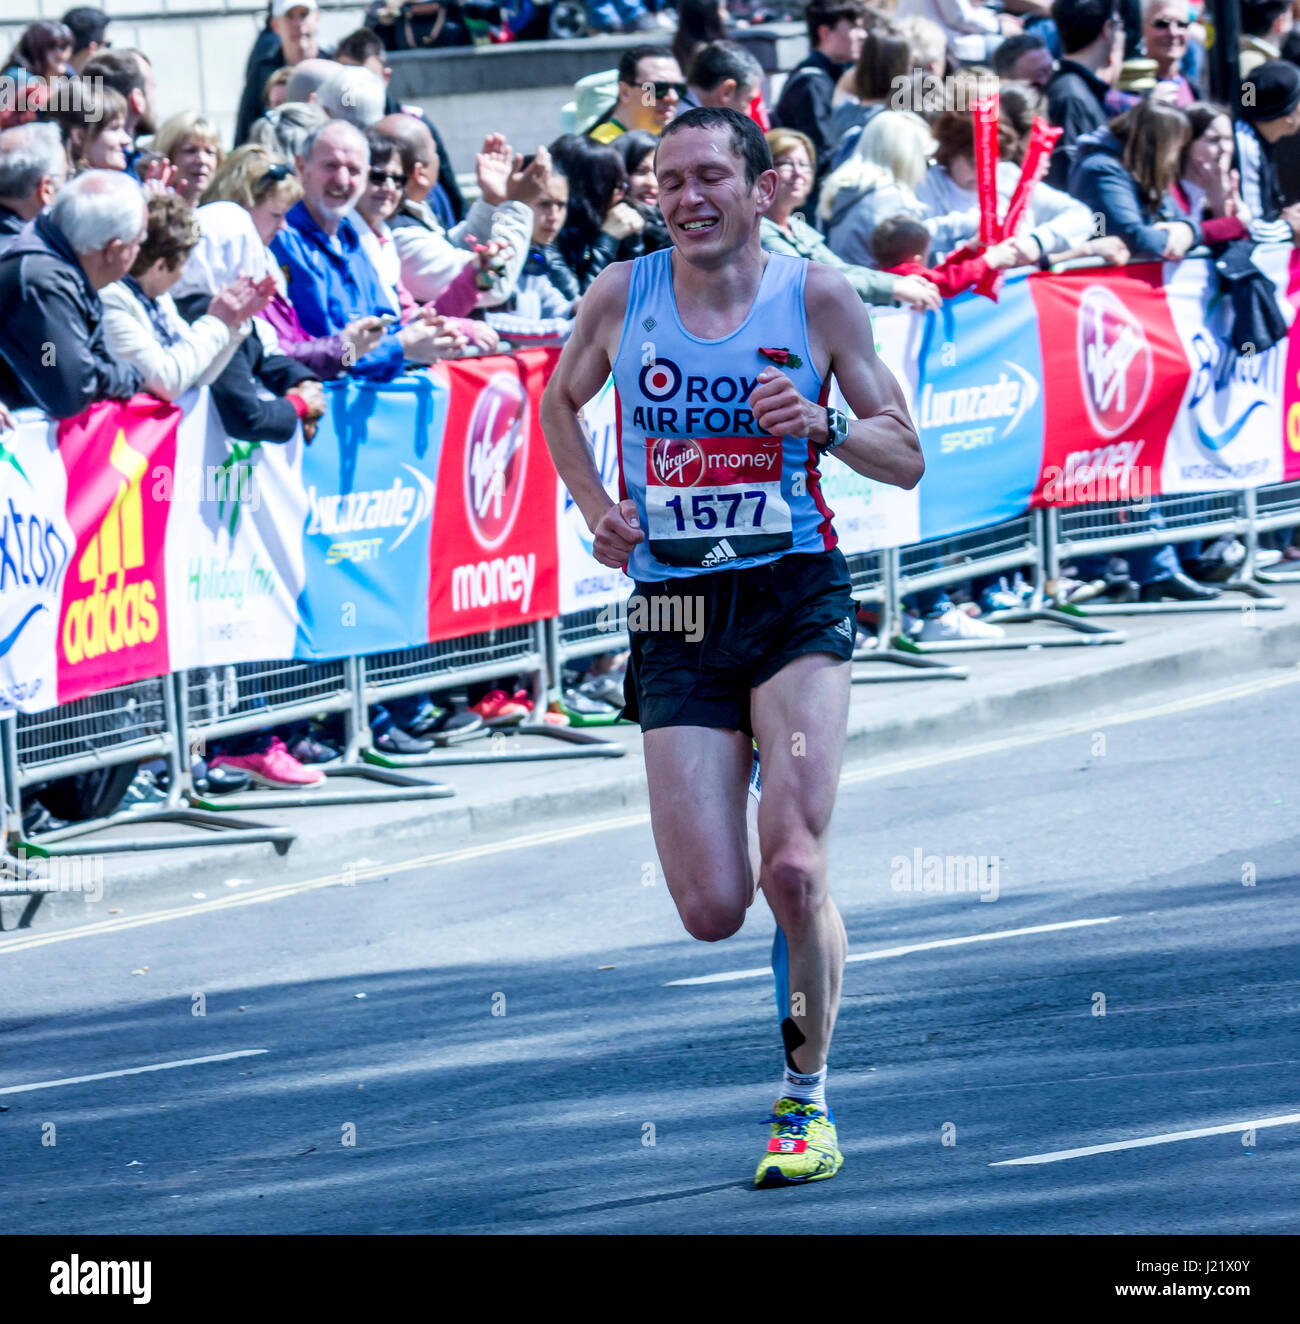 St James' Park, London, UK. 23 Apr, 2017. Tausende Teil in der 37 London Marathon Credit: Alan Fraser/alamy leben Nachrichten Stockfoto